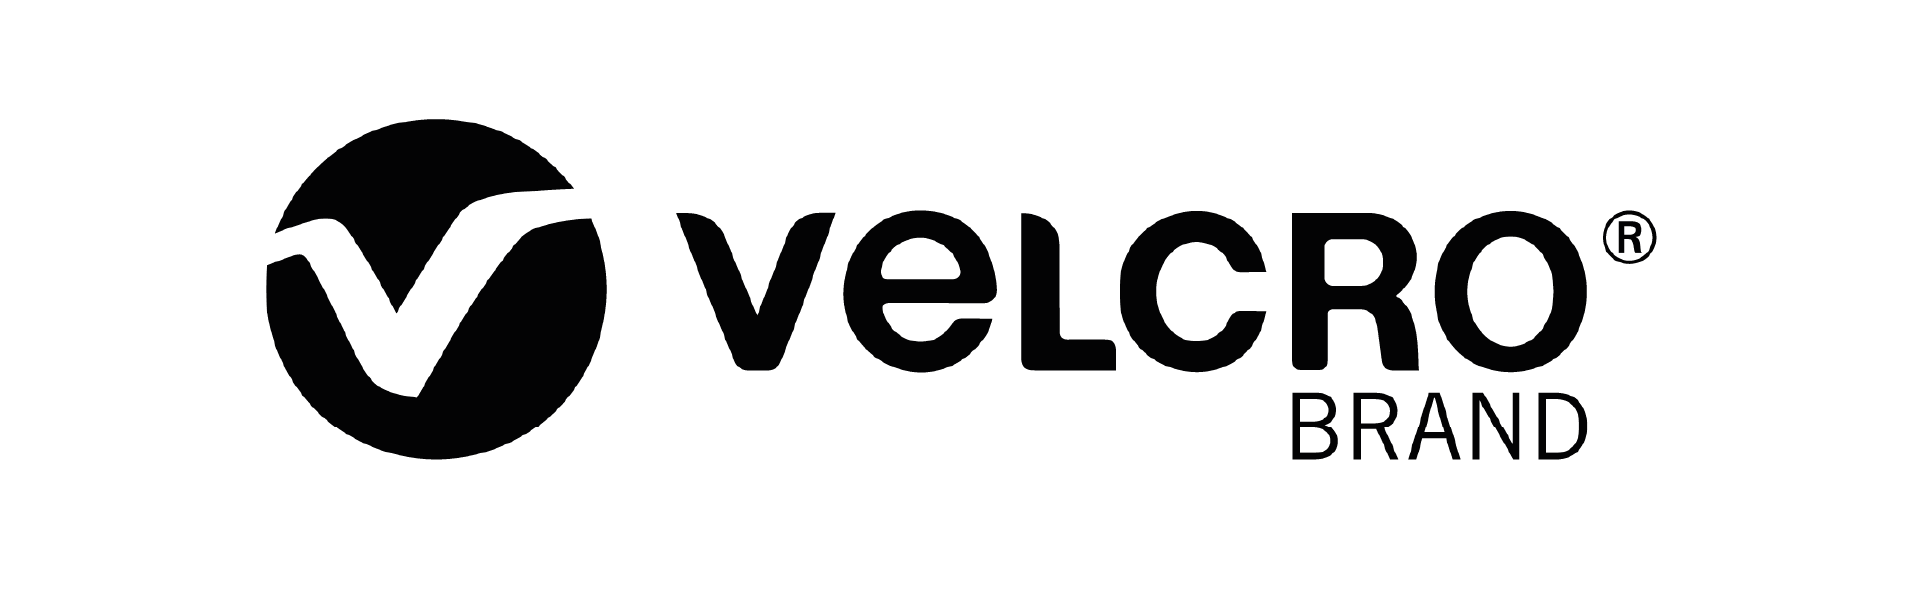 velcro brand